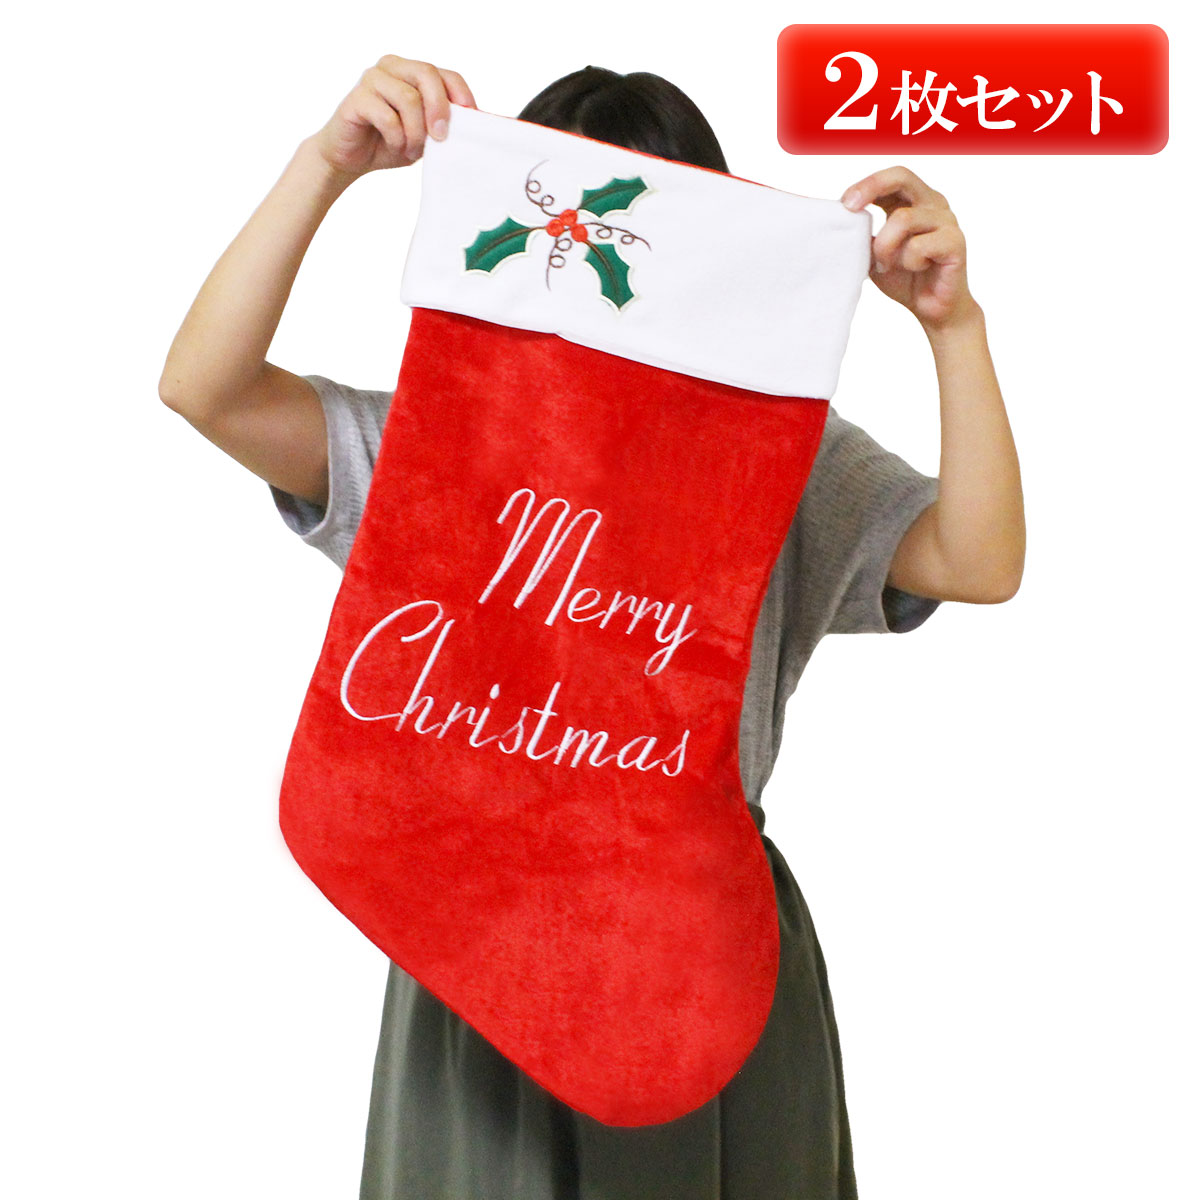 クリスマス 靴下 プレゼント 大きい サンタ クリスマスプレゼント サンタクロース 購買 日本メーカー新品 くつ下 ソックス 2枚セット